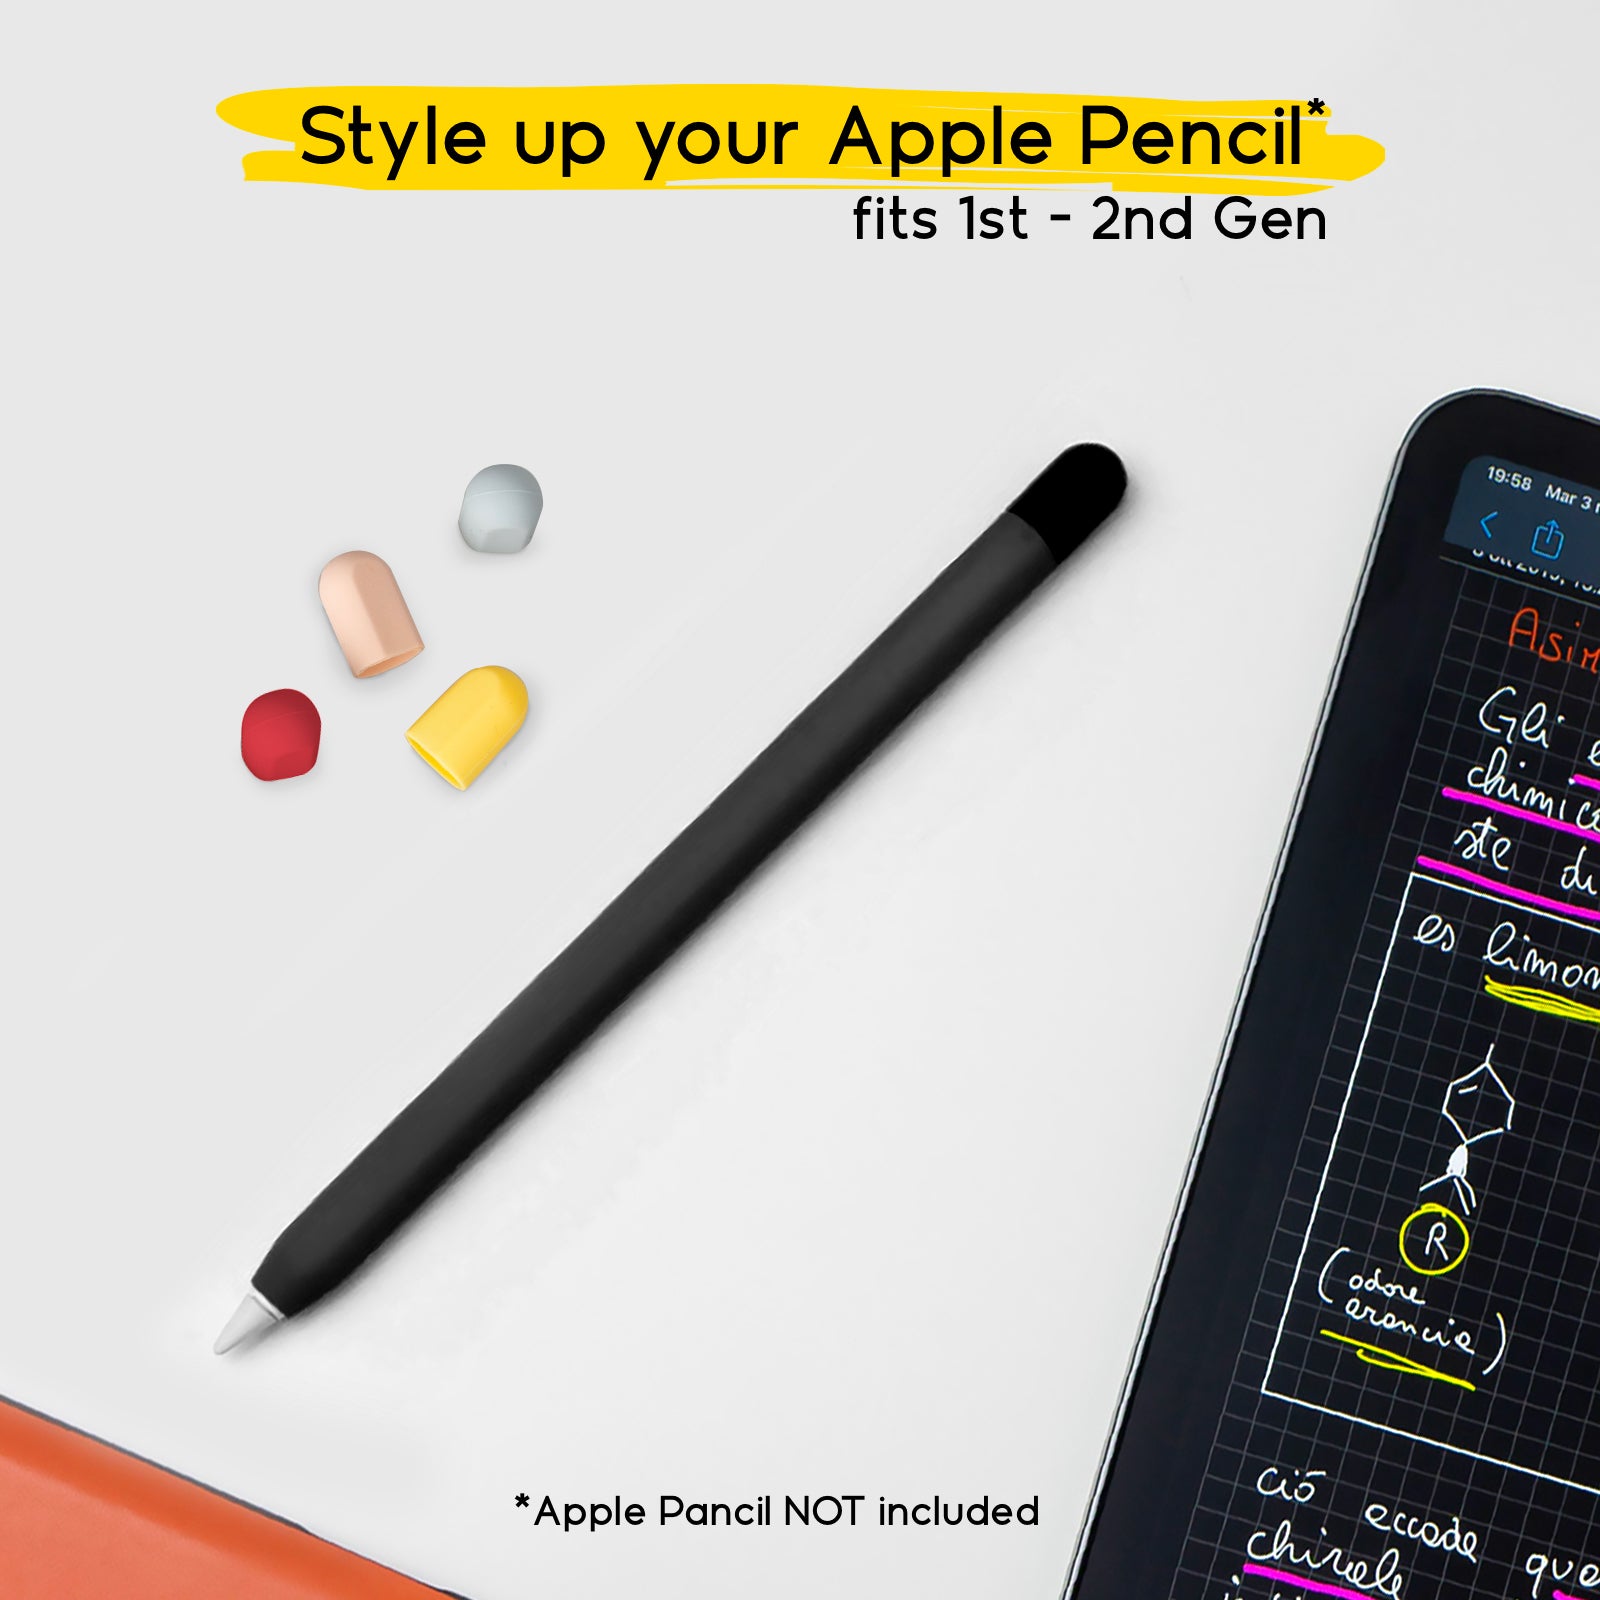 Schwarze Schutzhülle für Apple Pencil der 1. und 2. Generation mit 5 farbigen Kappen
